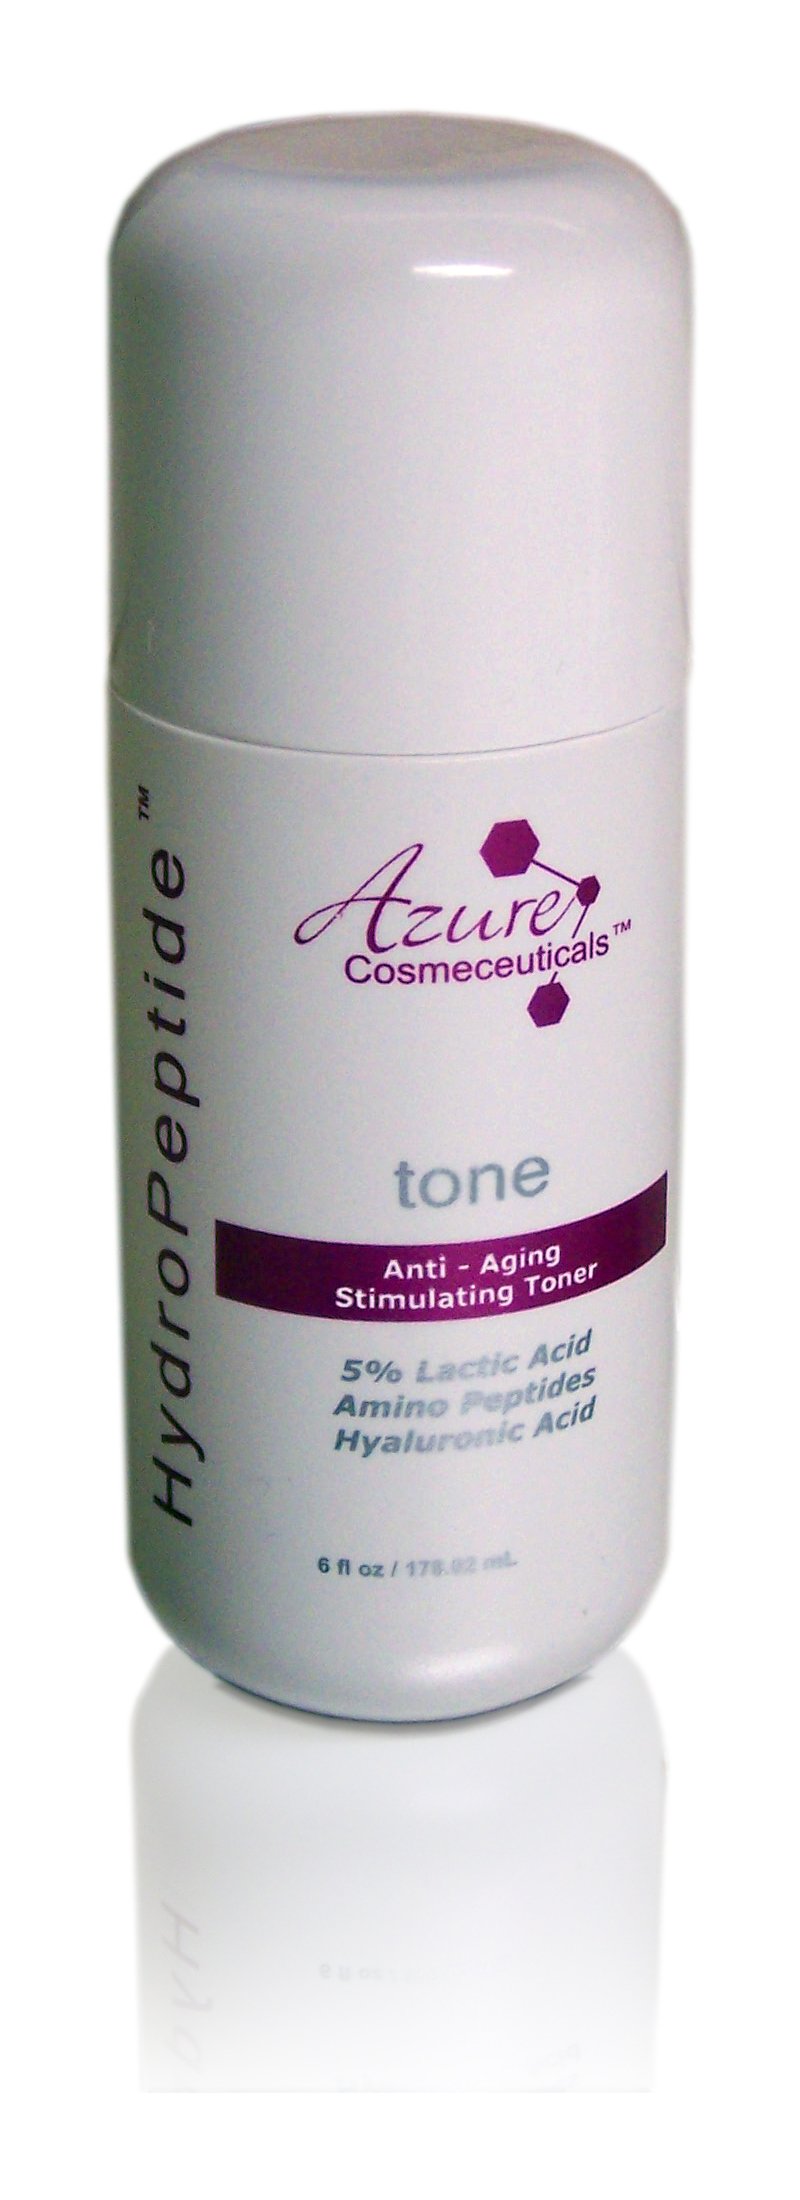 Azure HydroPeptide Anti-Aging Stimulating Toner